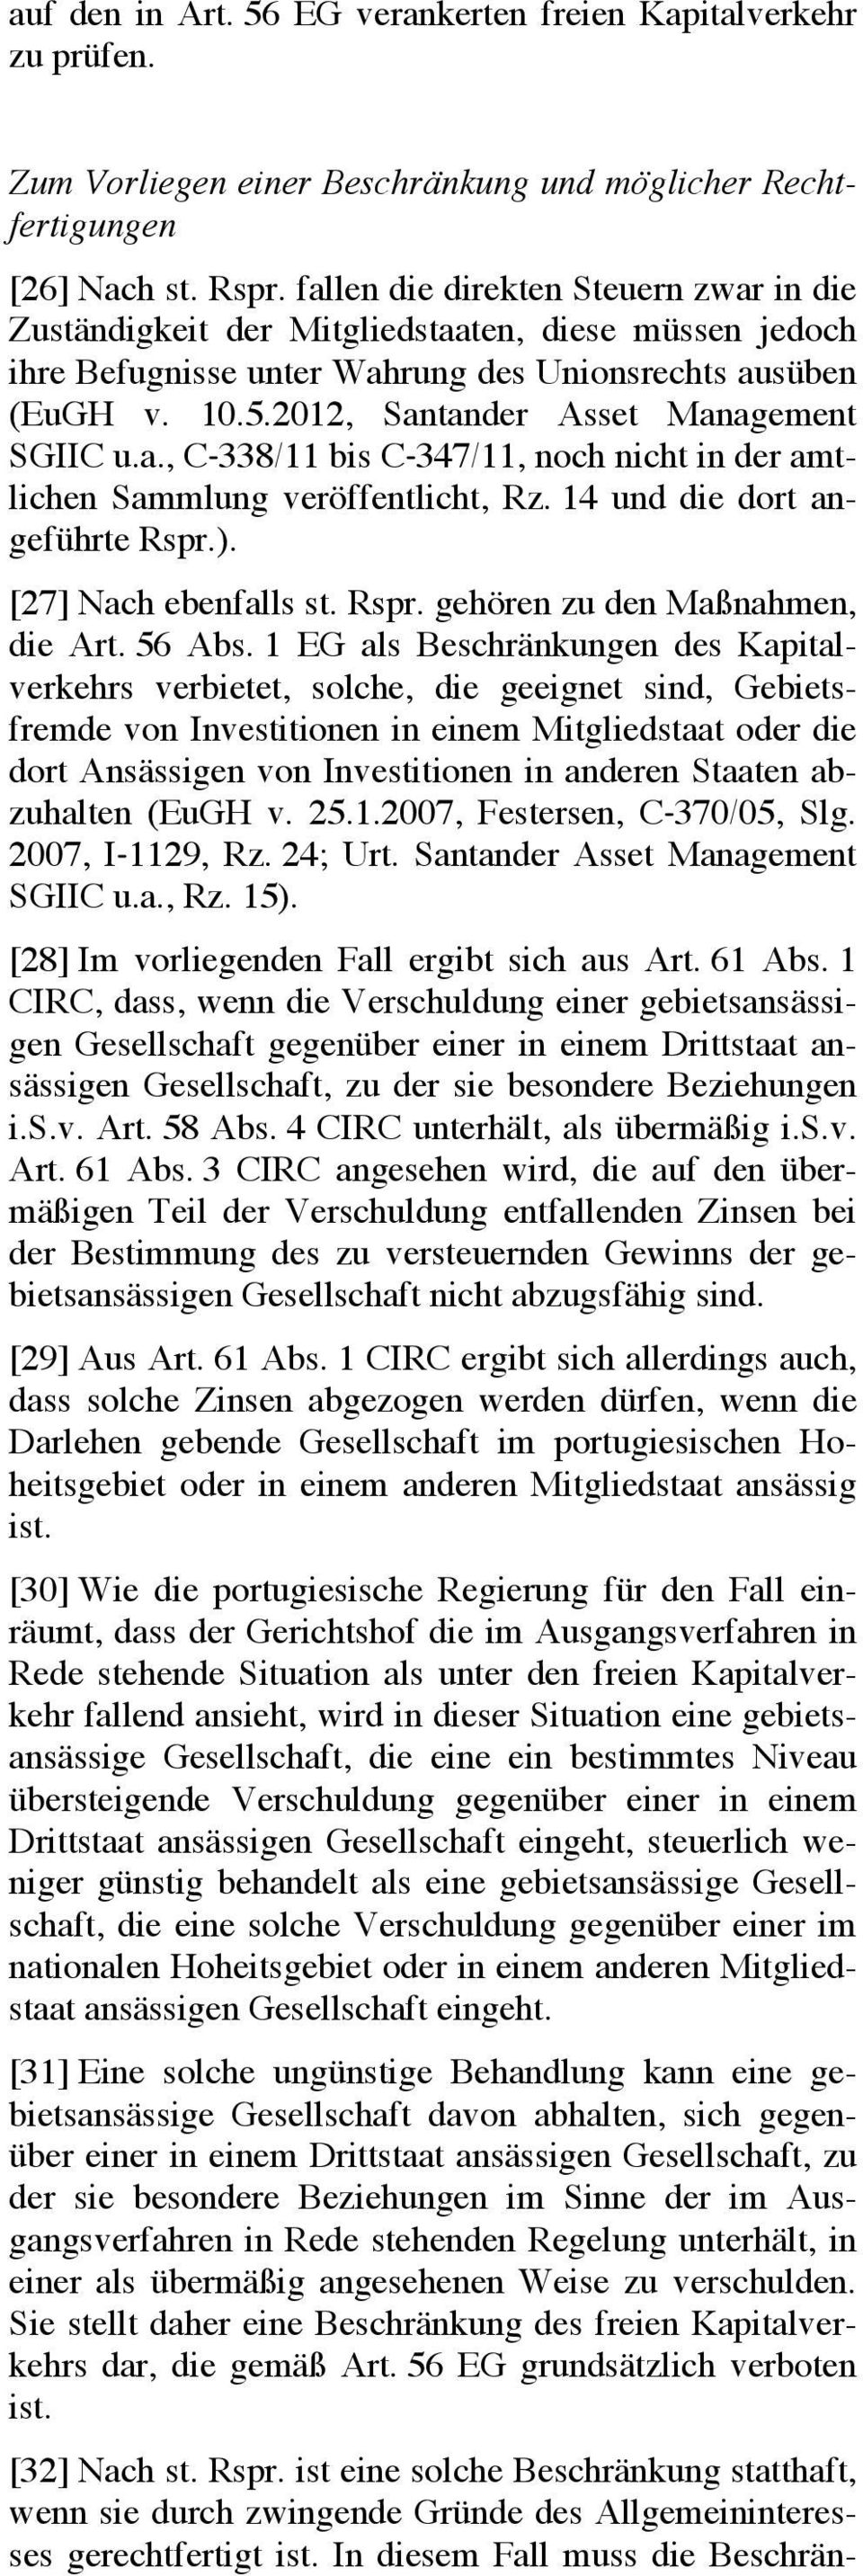 2012, Santander Asset Management SGIIC u.a., C-338/11 bis C-347/11, noch nicht in der amtlichen Sammlung veröffentlicht, Rz. 14 und die dort angeführte Rspr.). [27] Nach ebenfalls st. Rspr. gehören zu den Maßnahmen, die Art.